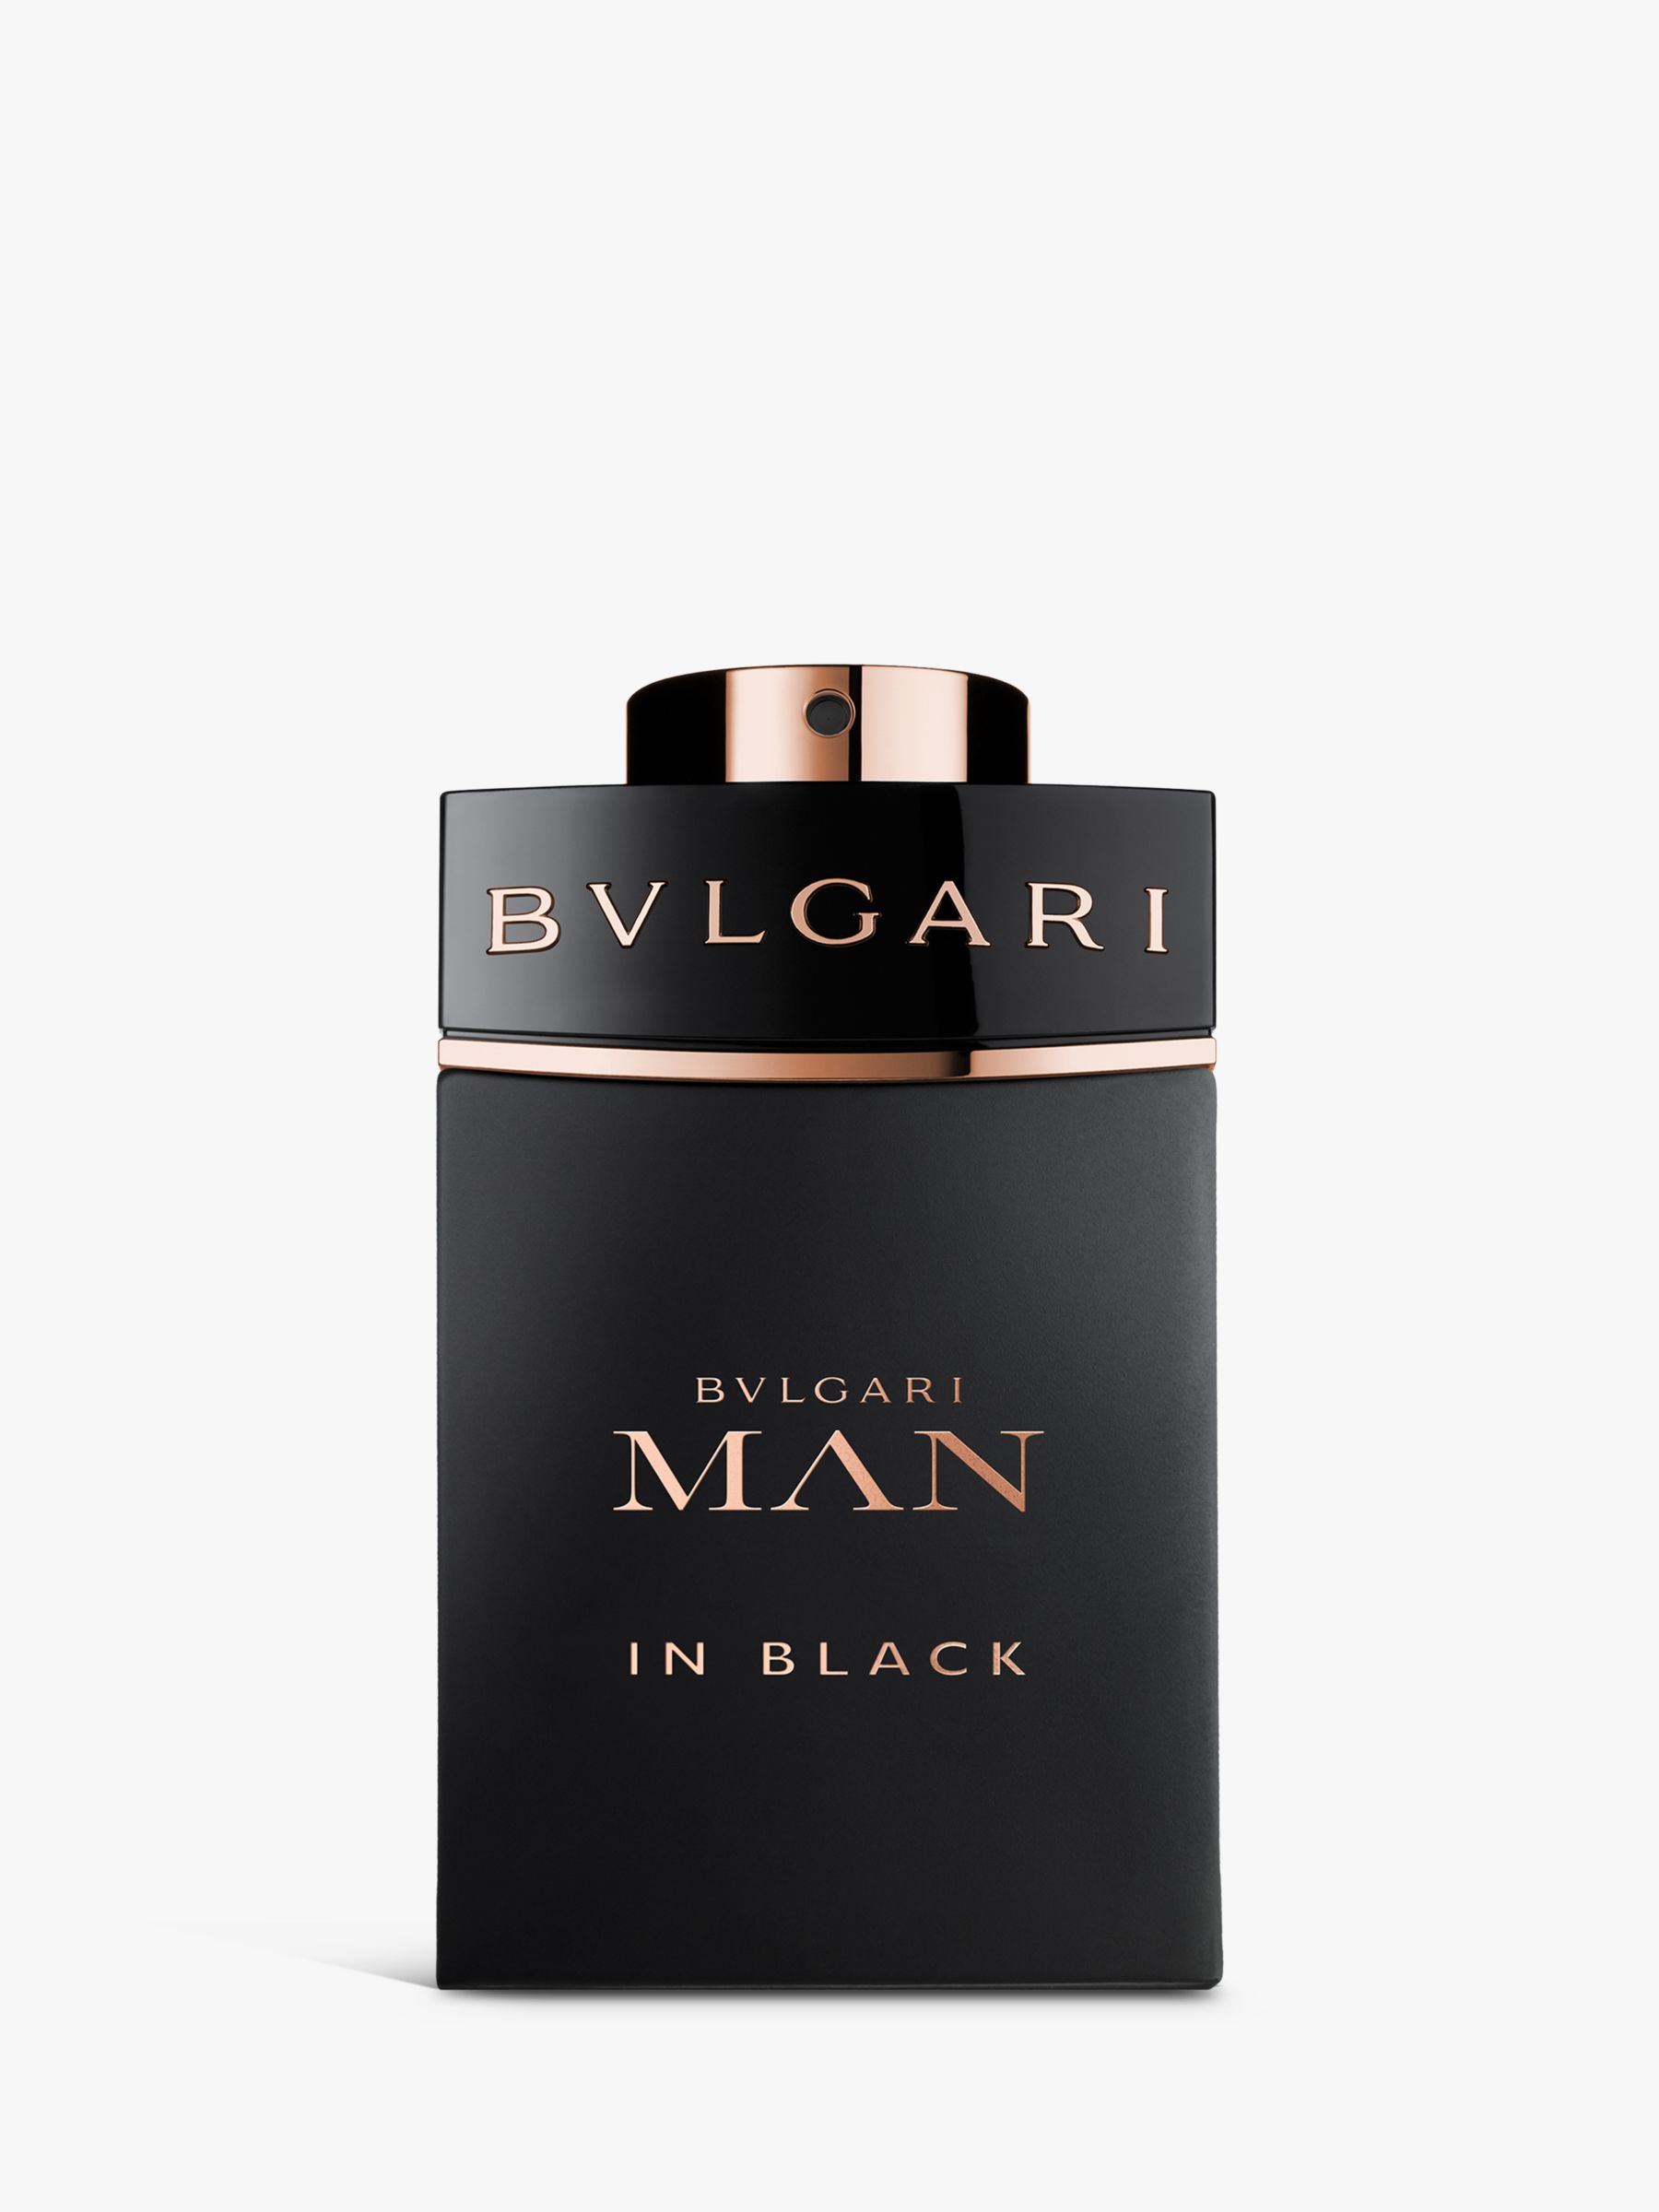 BVLGARI Man In Black Eau de Parfum at 